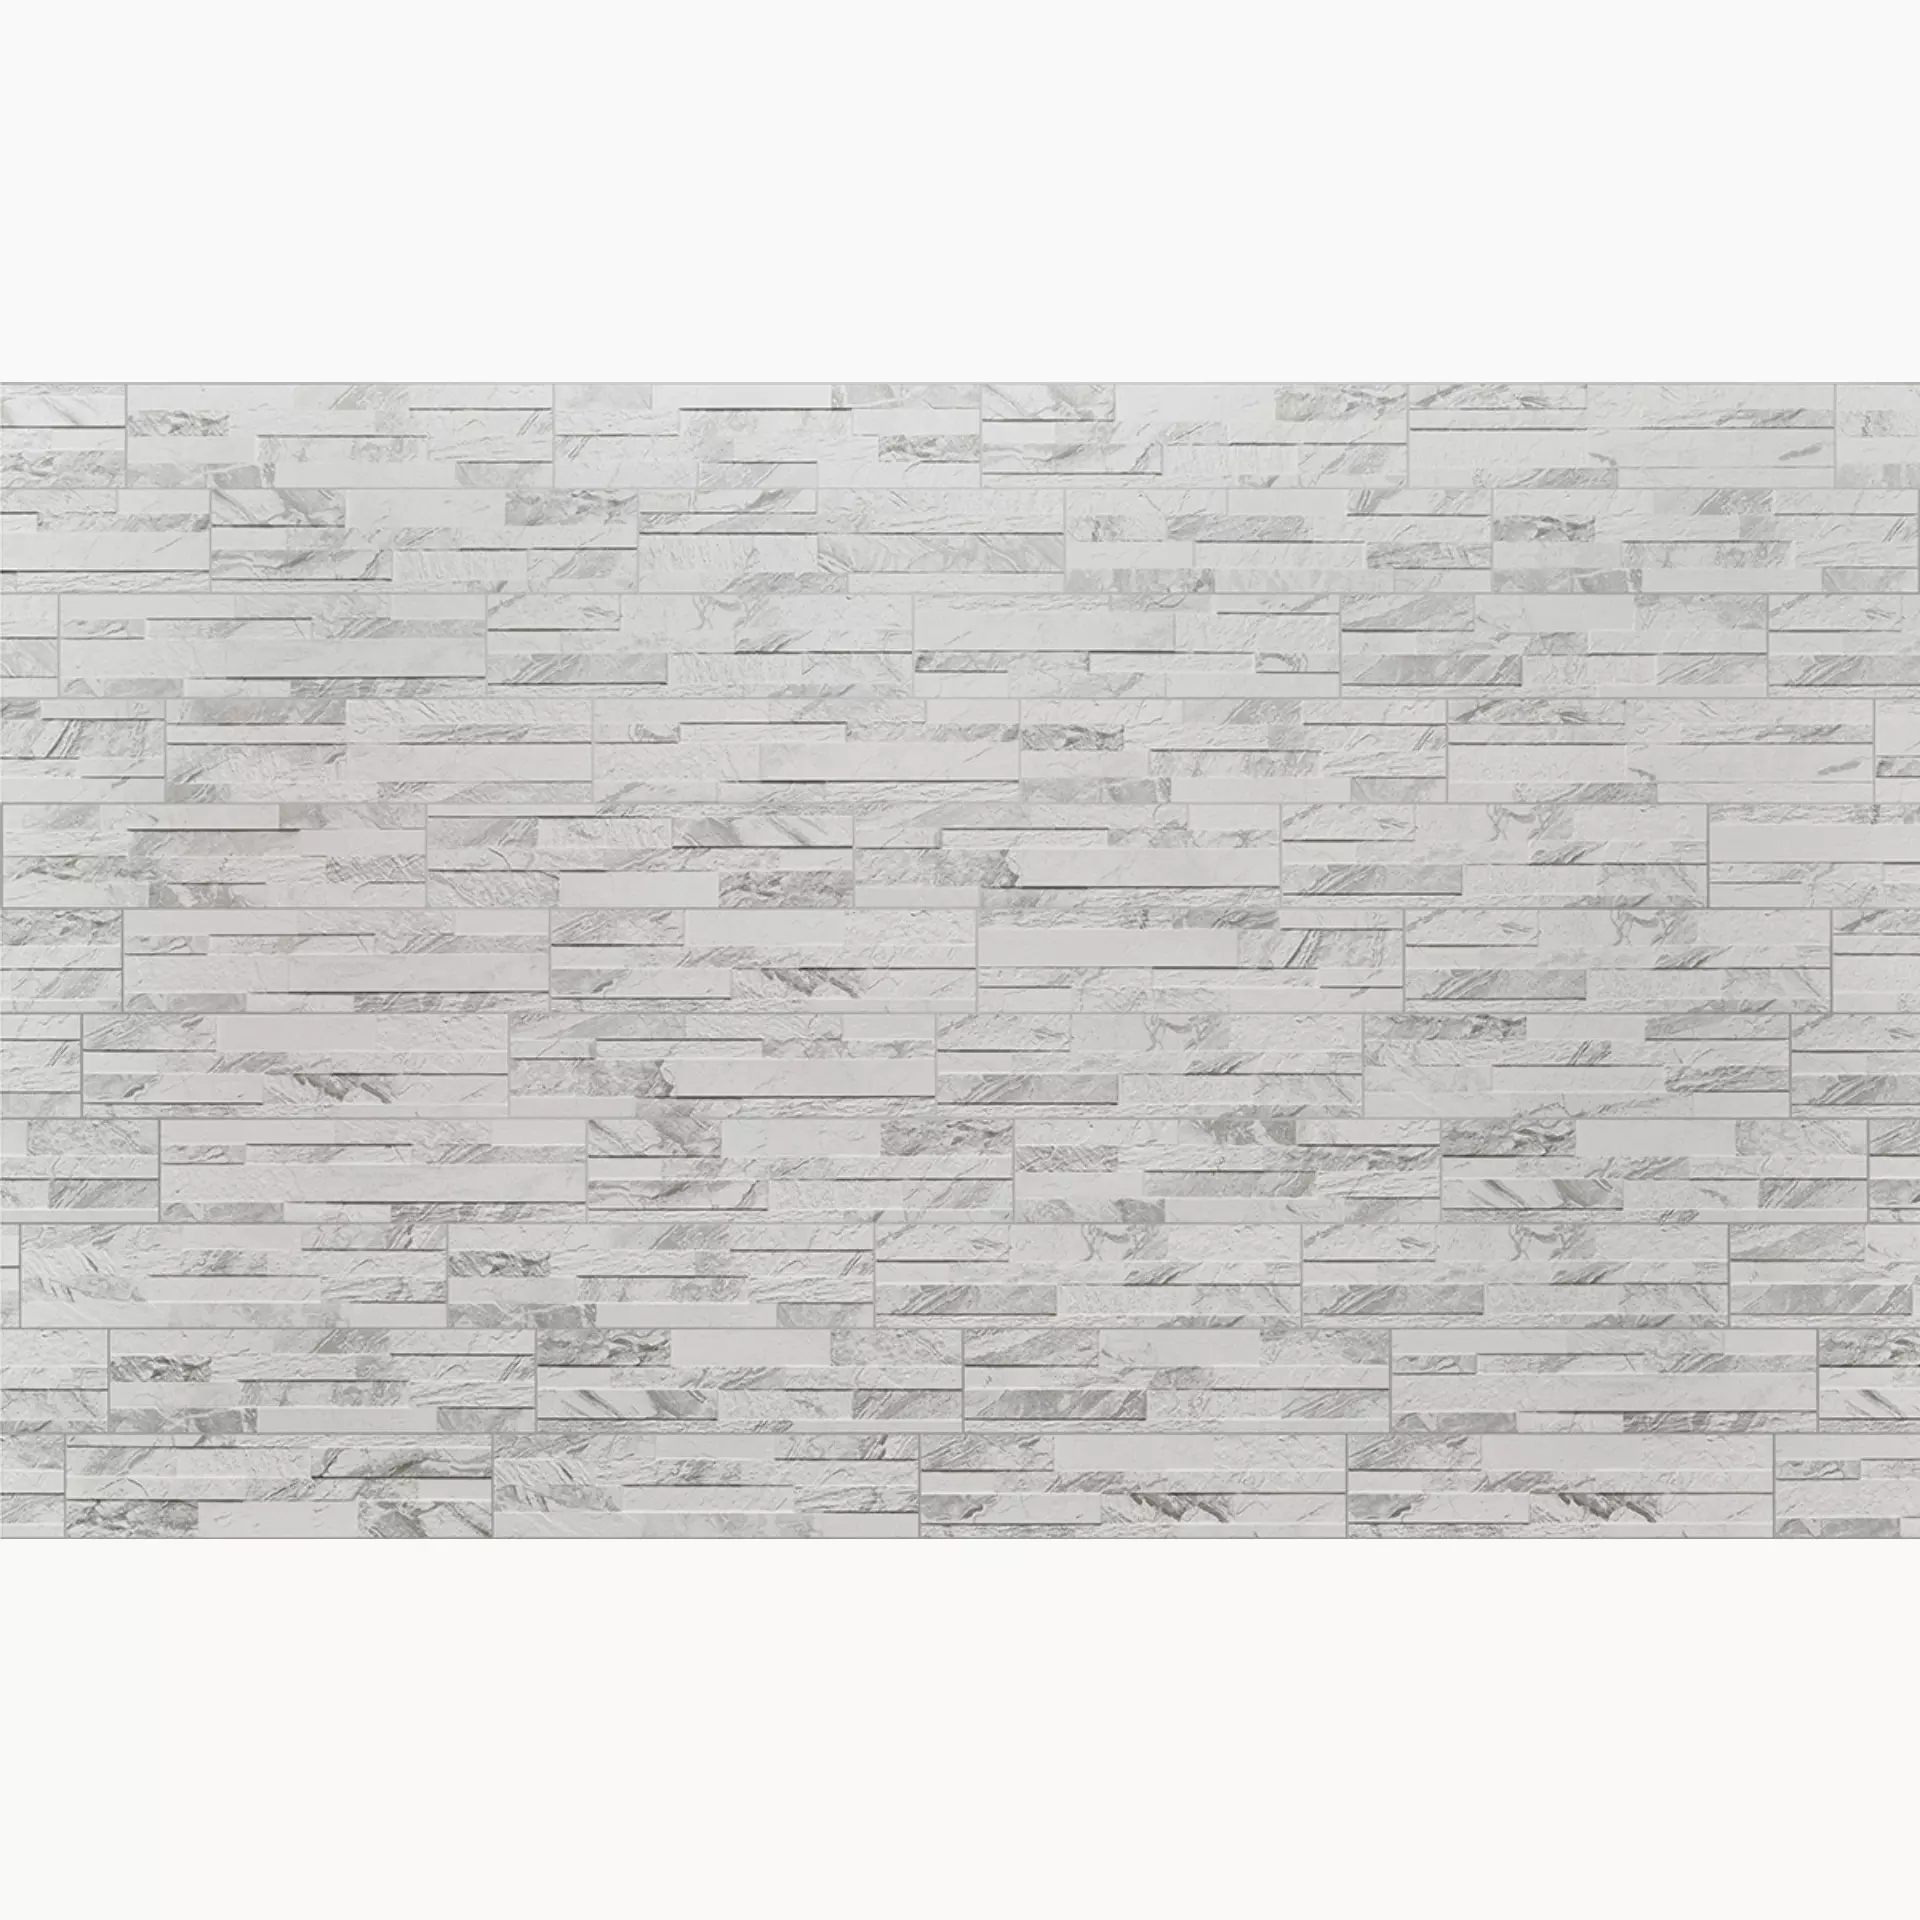 Rondine Gioia 3D White Struttura J87456 15x61cm 11mm